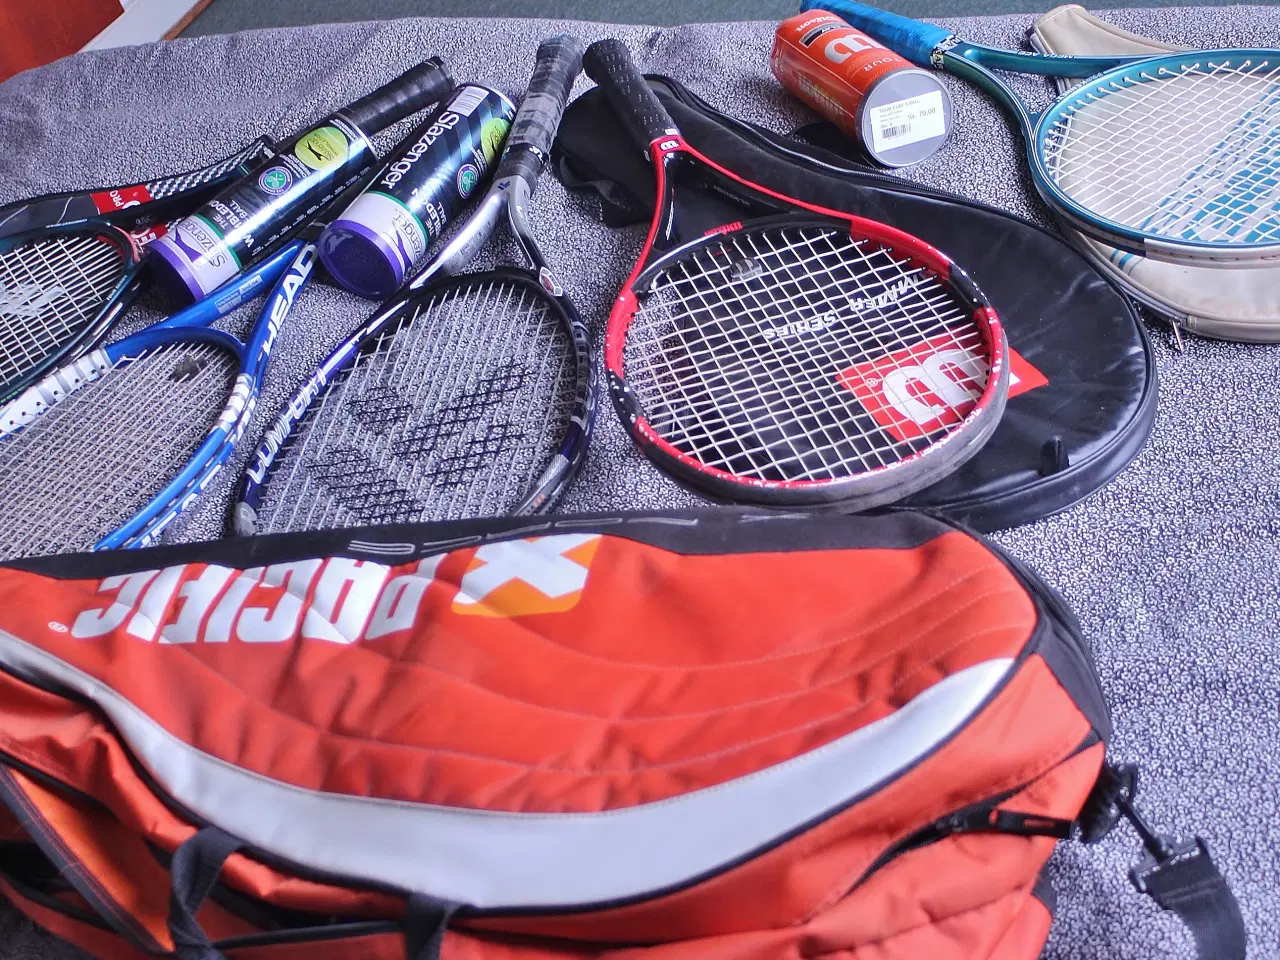 Billede 2 - Tennis Ketchere, taske og bolde.